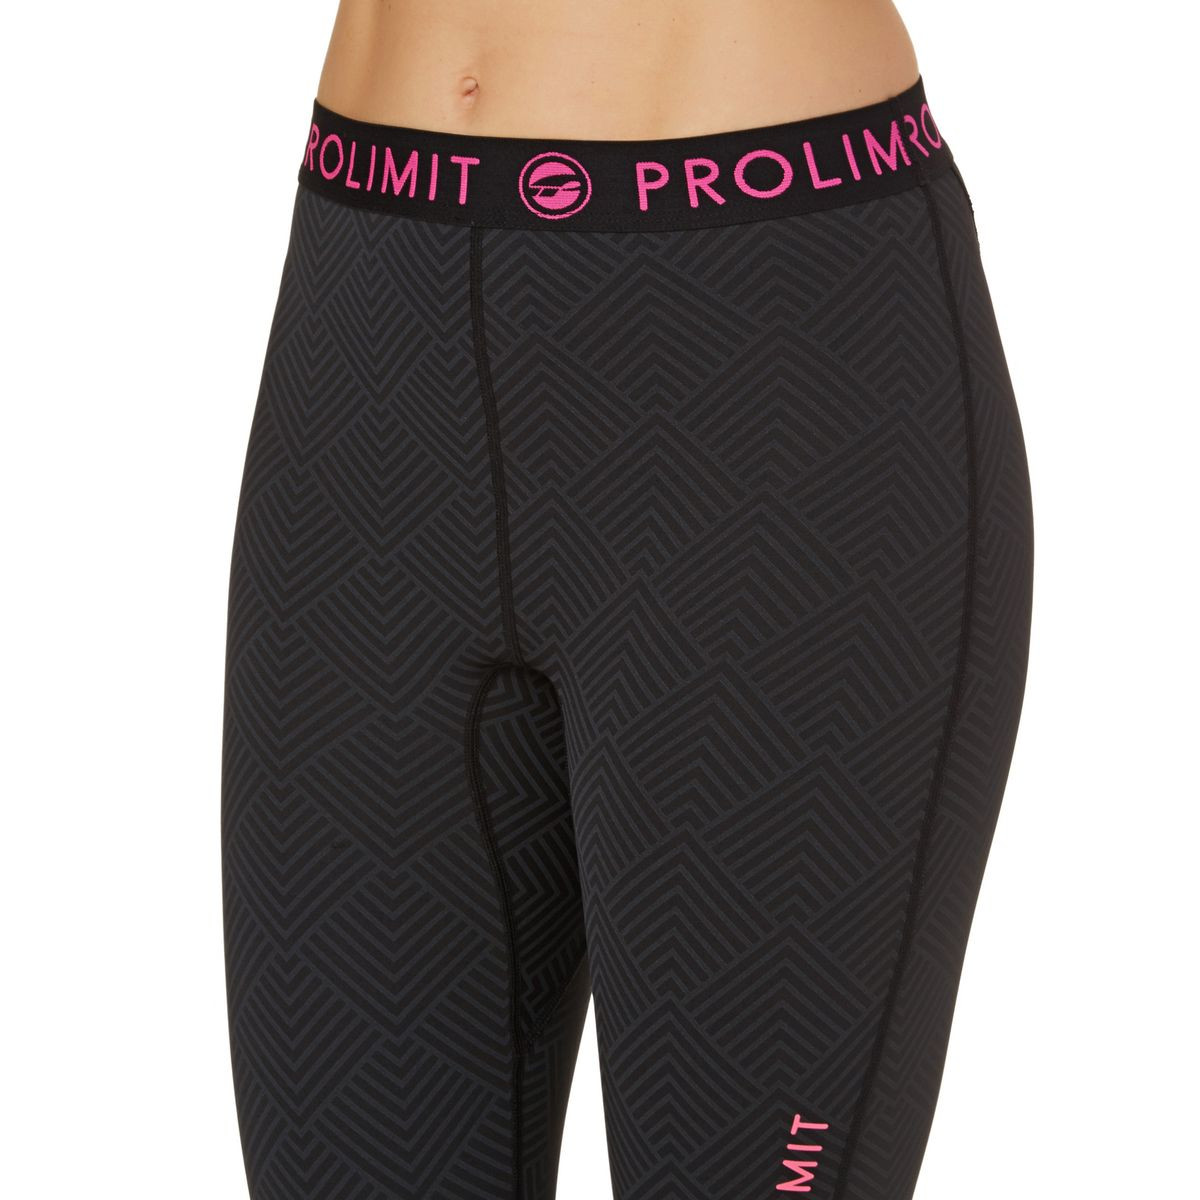 Prolimit Womens SUP Atlethic QD 2017 Long Wetsuit Pants - Black/ Pink Print